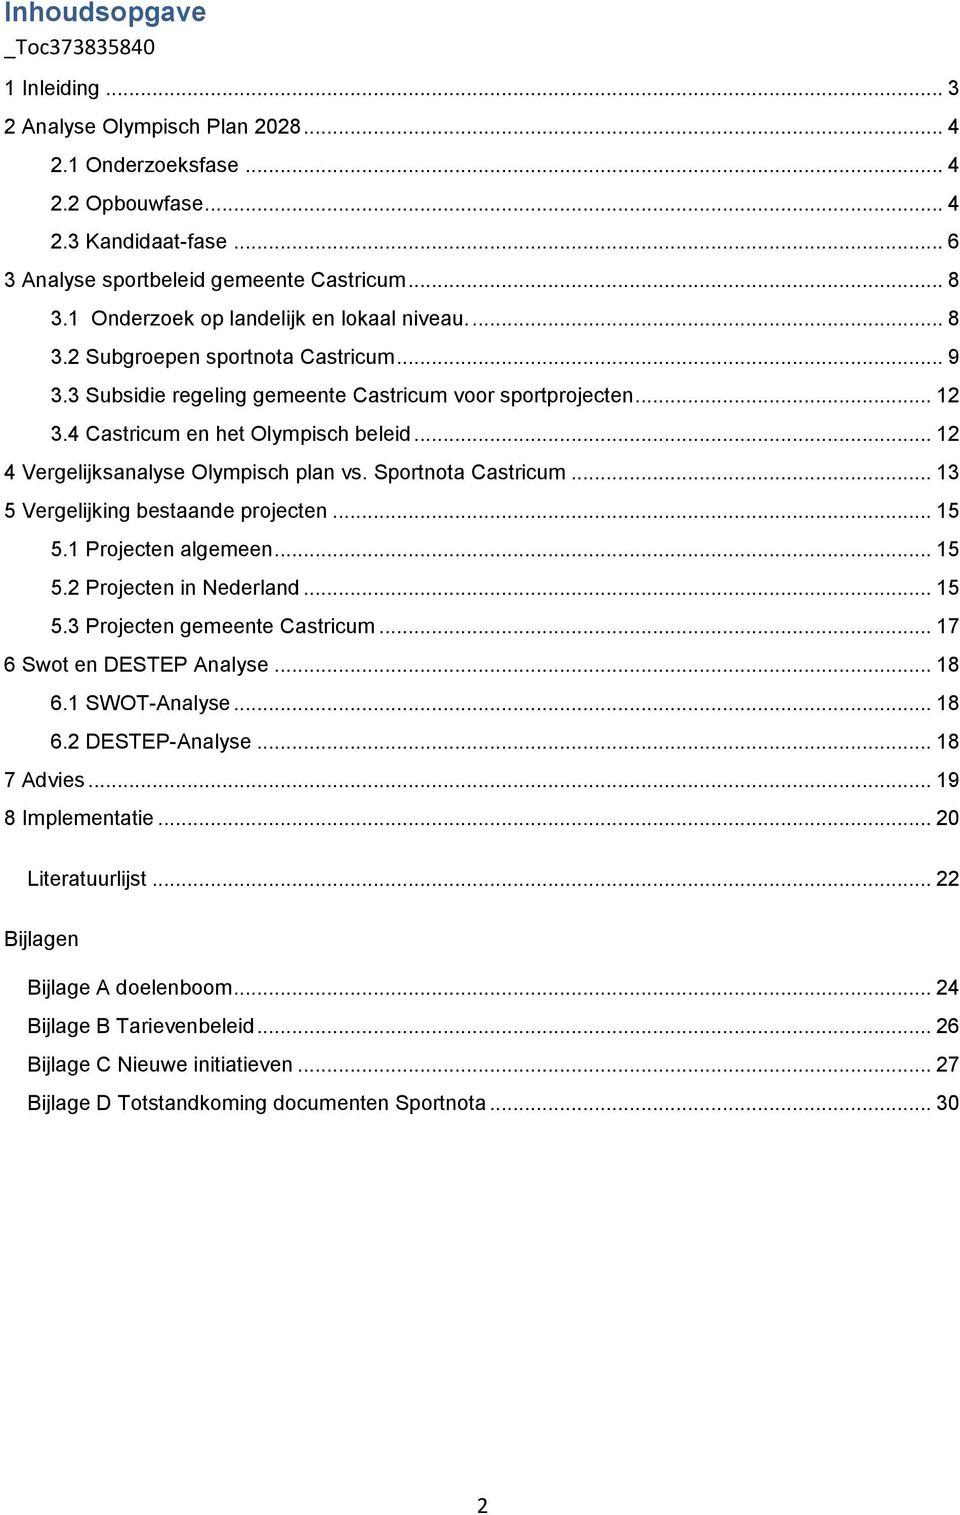 .. 12 4 Vergelijksanalyse Olympisch plan vs. Sportnota Castricum... 13 5 Vergelijking bestaande projecten... 15 5.1 Projecten algemeen... 15 5.2 Projecten in Nederland... 15 5.3 Projecten gemeente Castricum.